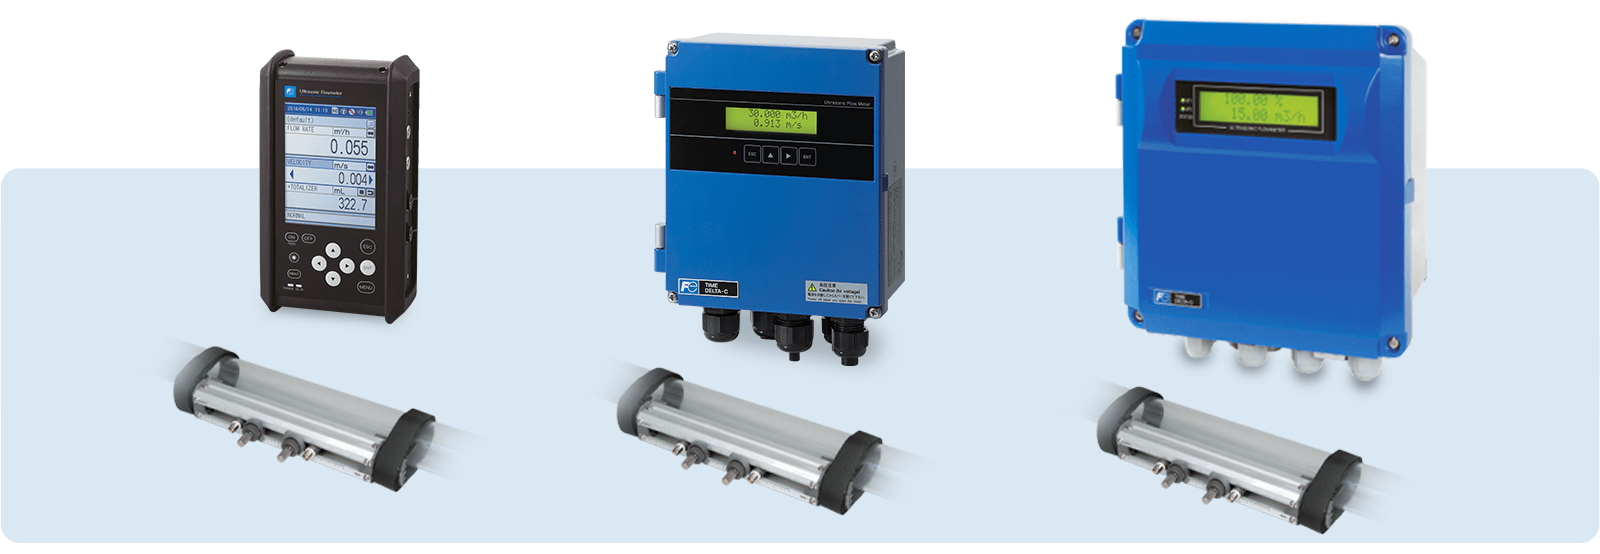 Clamp-on ultrasonic flow meters